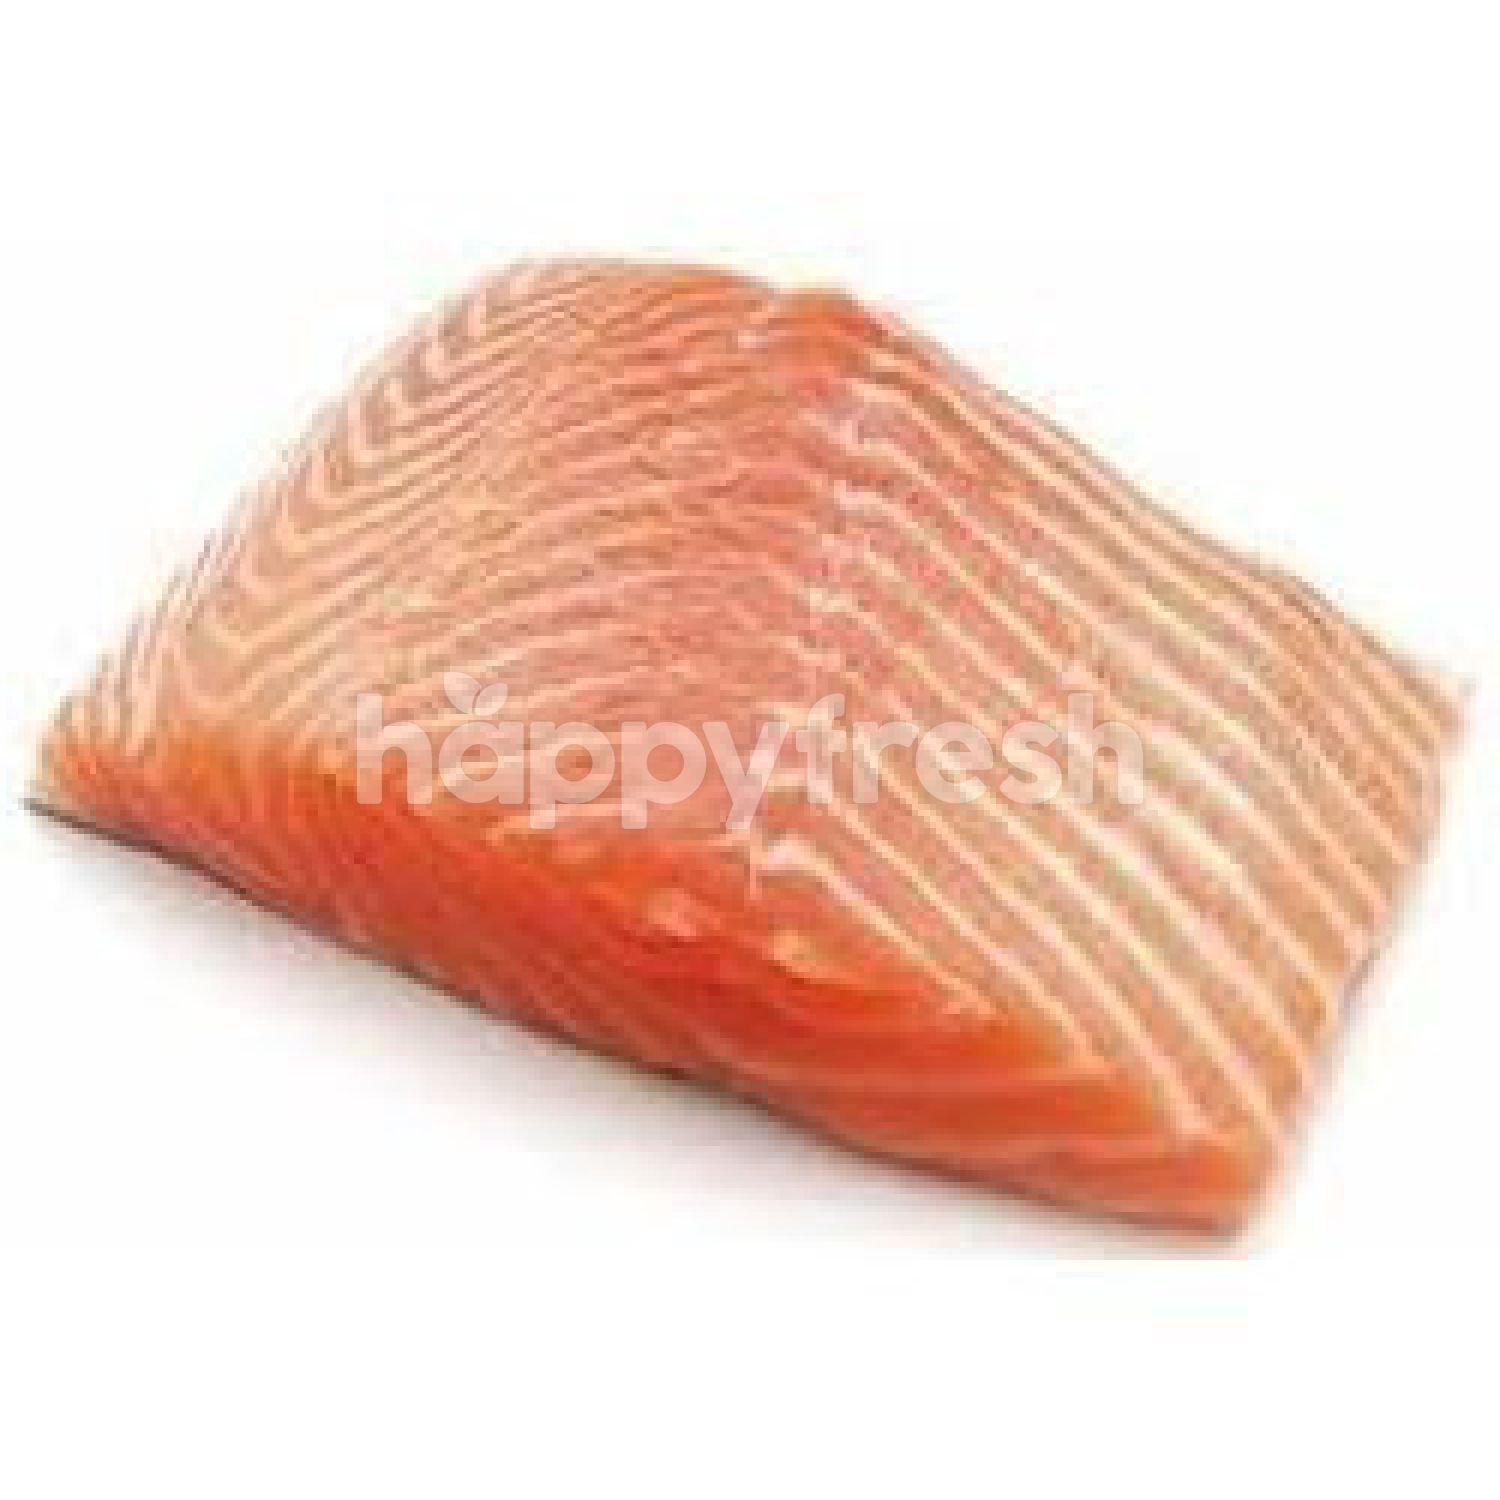 Beli Frozen Salmon Block dari Cold Storage - HappyFresh